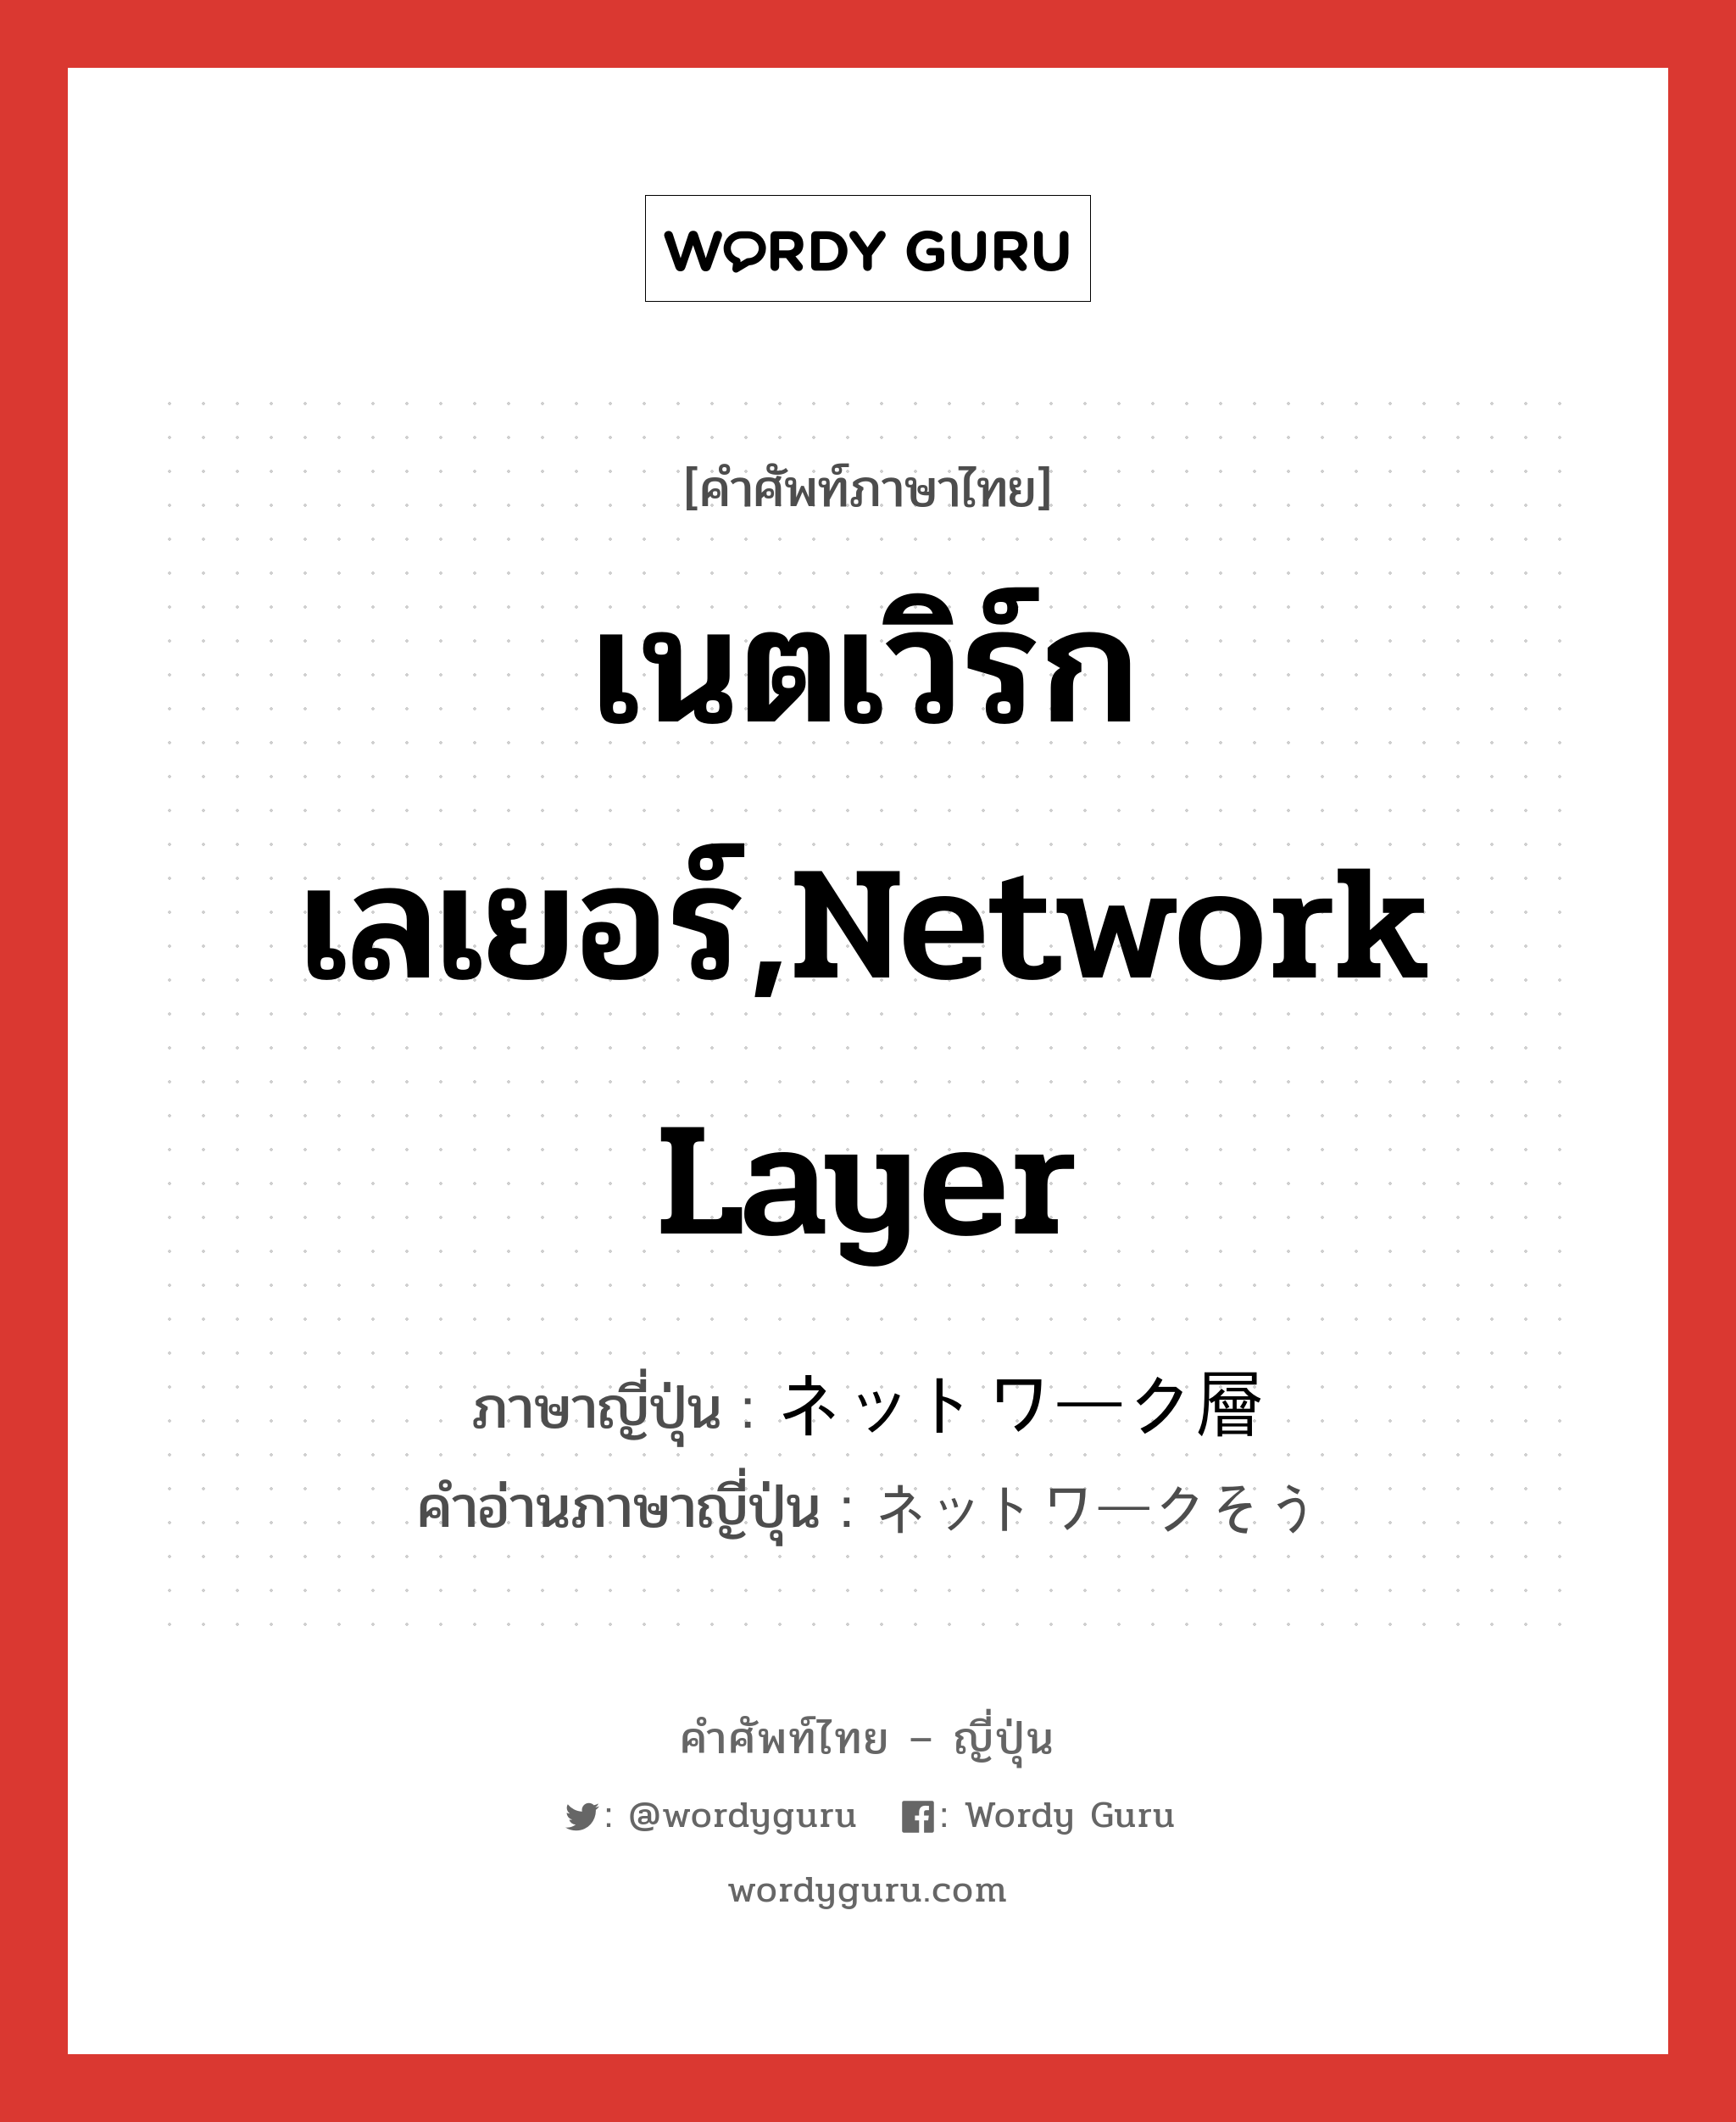 เนตเวิร์กเลเยอร์,network layer ภาษาญี่ปุ่นคืออะไร, คำศัพท์ภาษาไทย - ญี่ปุ่น เนตเวิร์กเลเยอร์,network layer ภาษาญี่ปุ่น ネットワーク層 คำอ่านภาษาญี่ปุ่น ネットワークそう หมวด n หมวด n